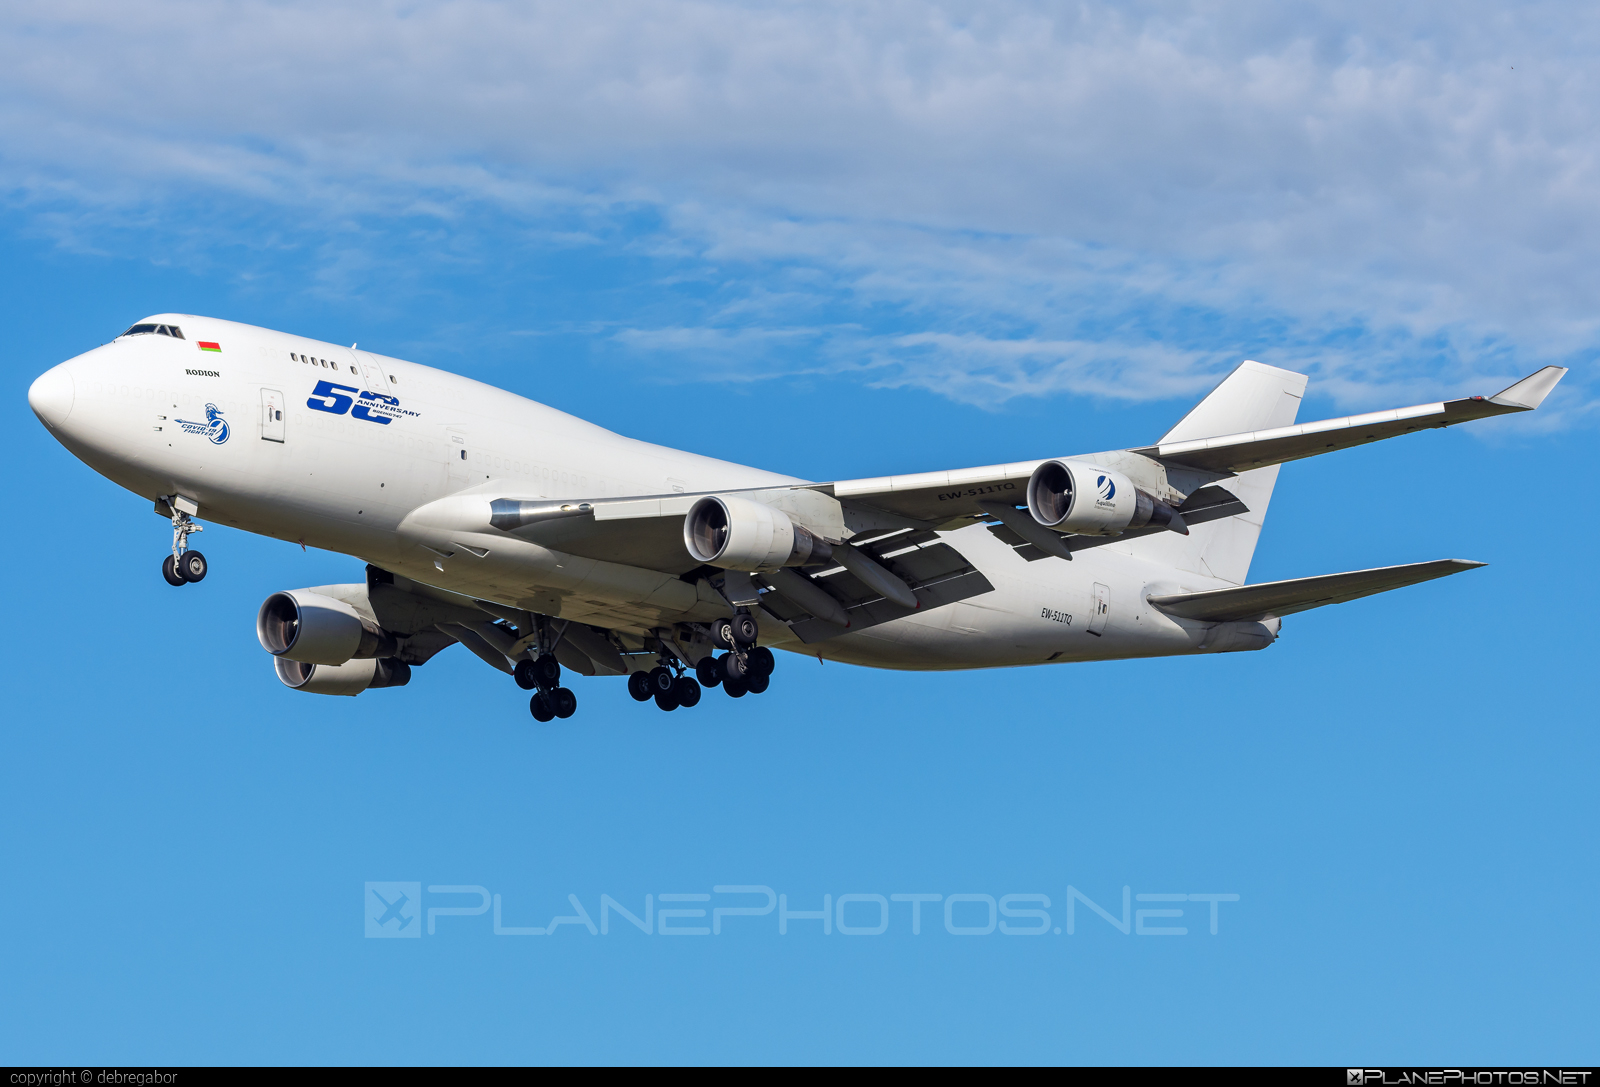 Boeing 747-400BCF - EW-511TQ operated by RubyStar #b747 #b747bcf #boeing #boeing747 #boeingconvertedfreighter #jumbo #rubystar